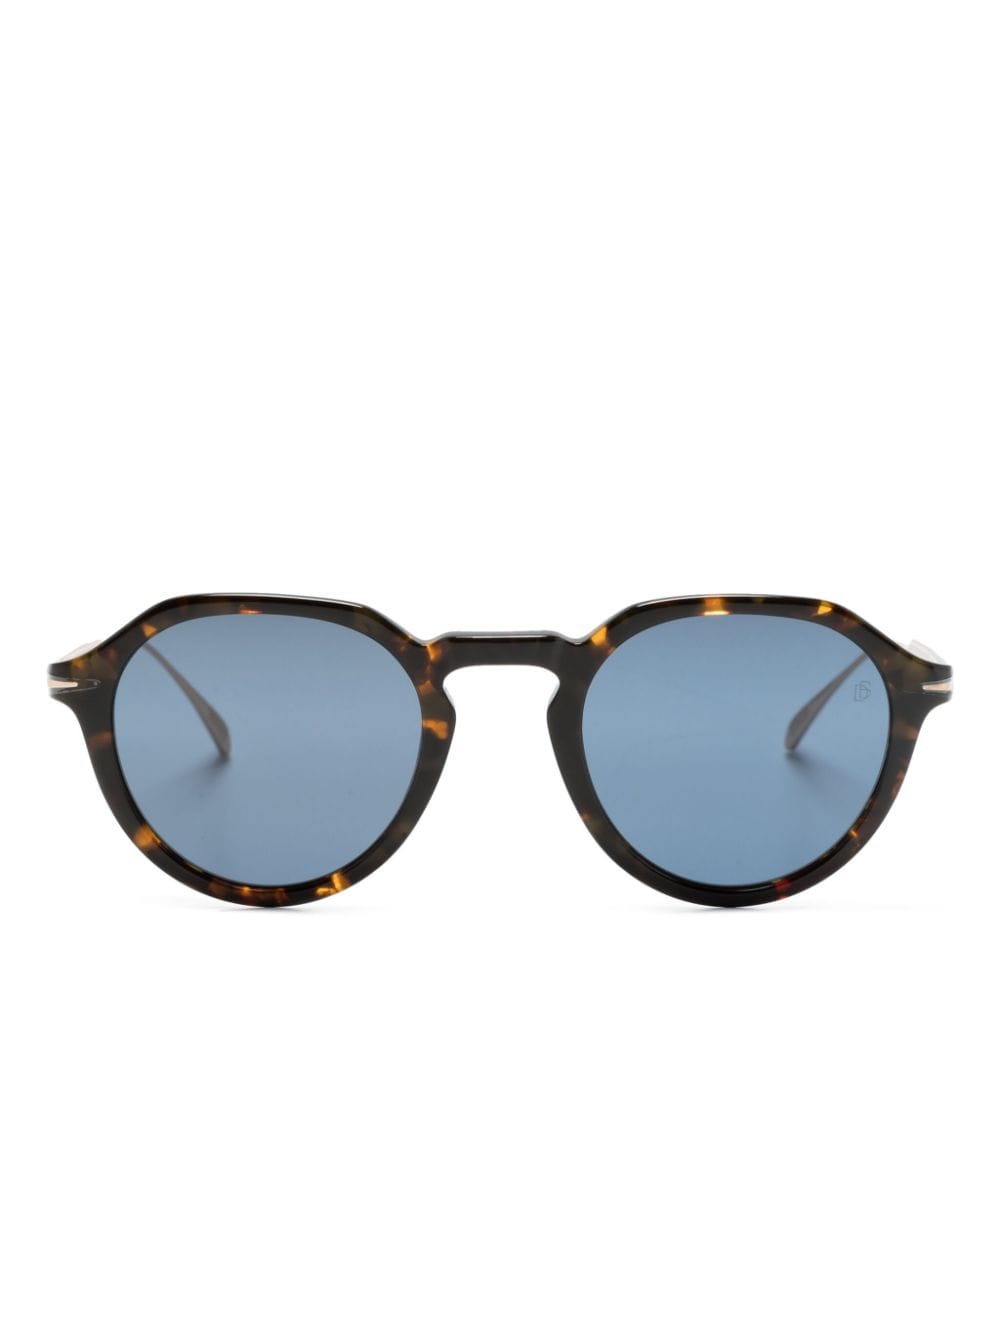 Eyewear by David Beckham 1098/S round-frame sunglasses - Brown von Eyewear by David Beckham